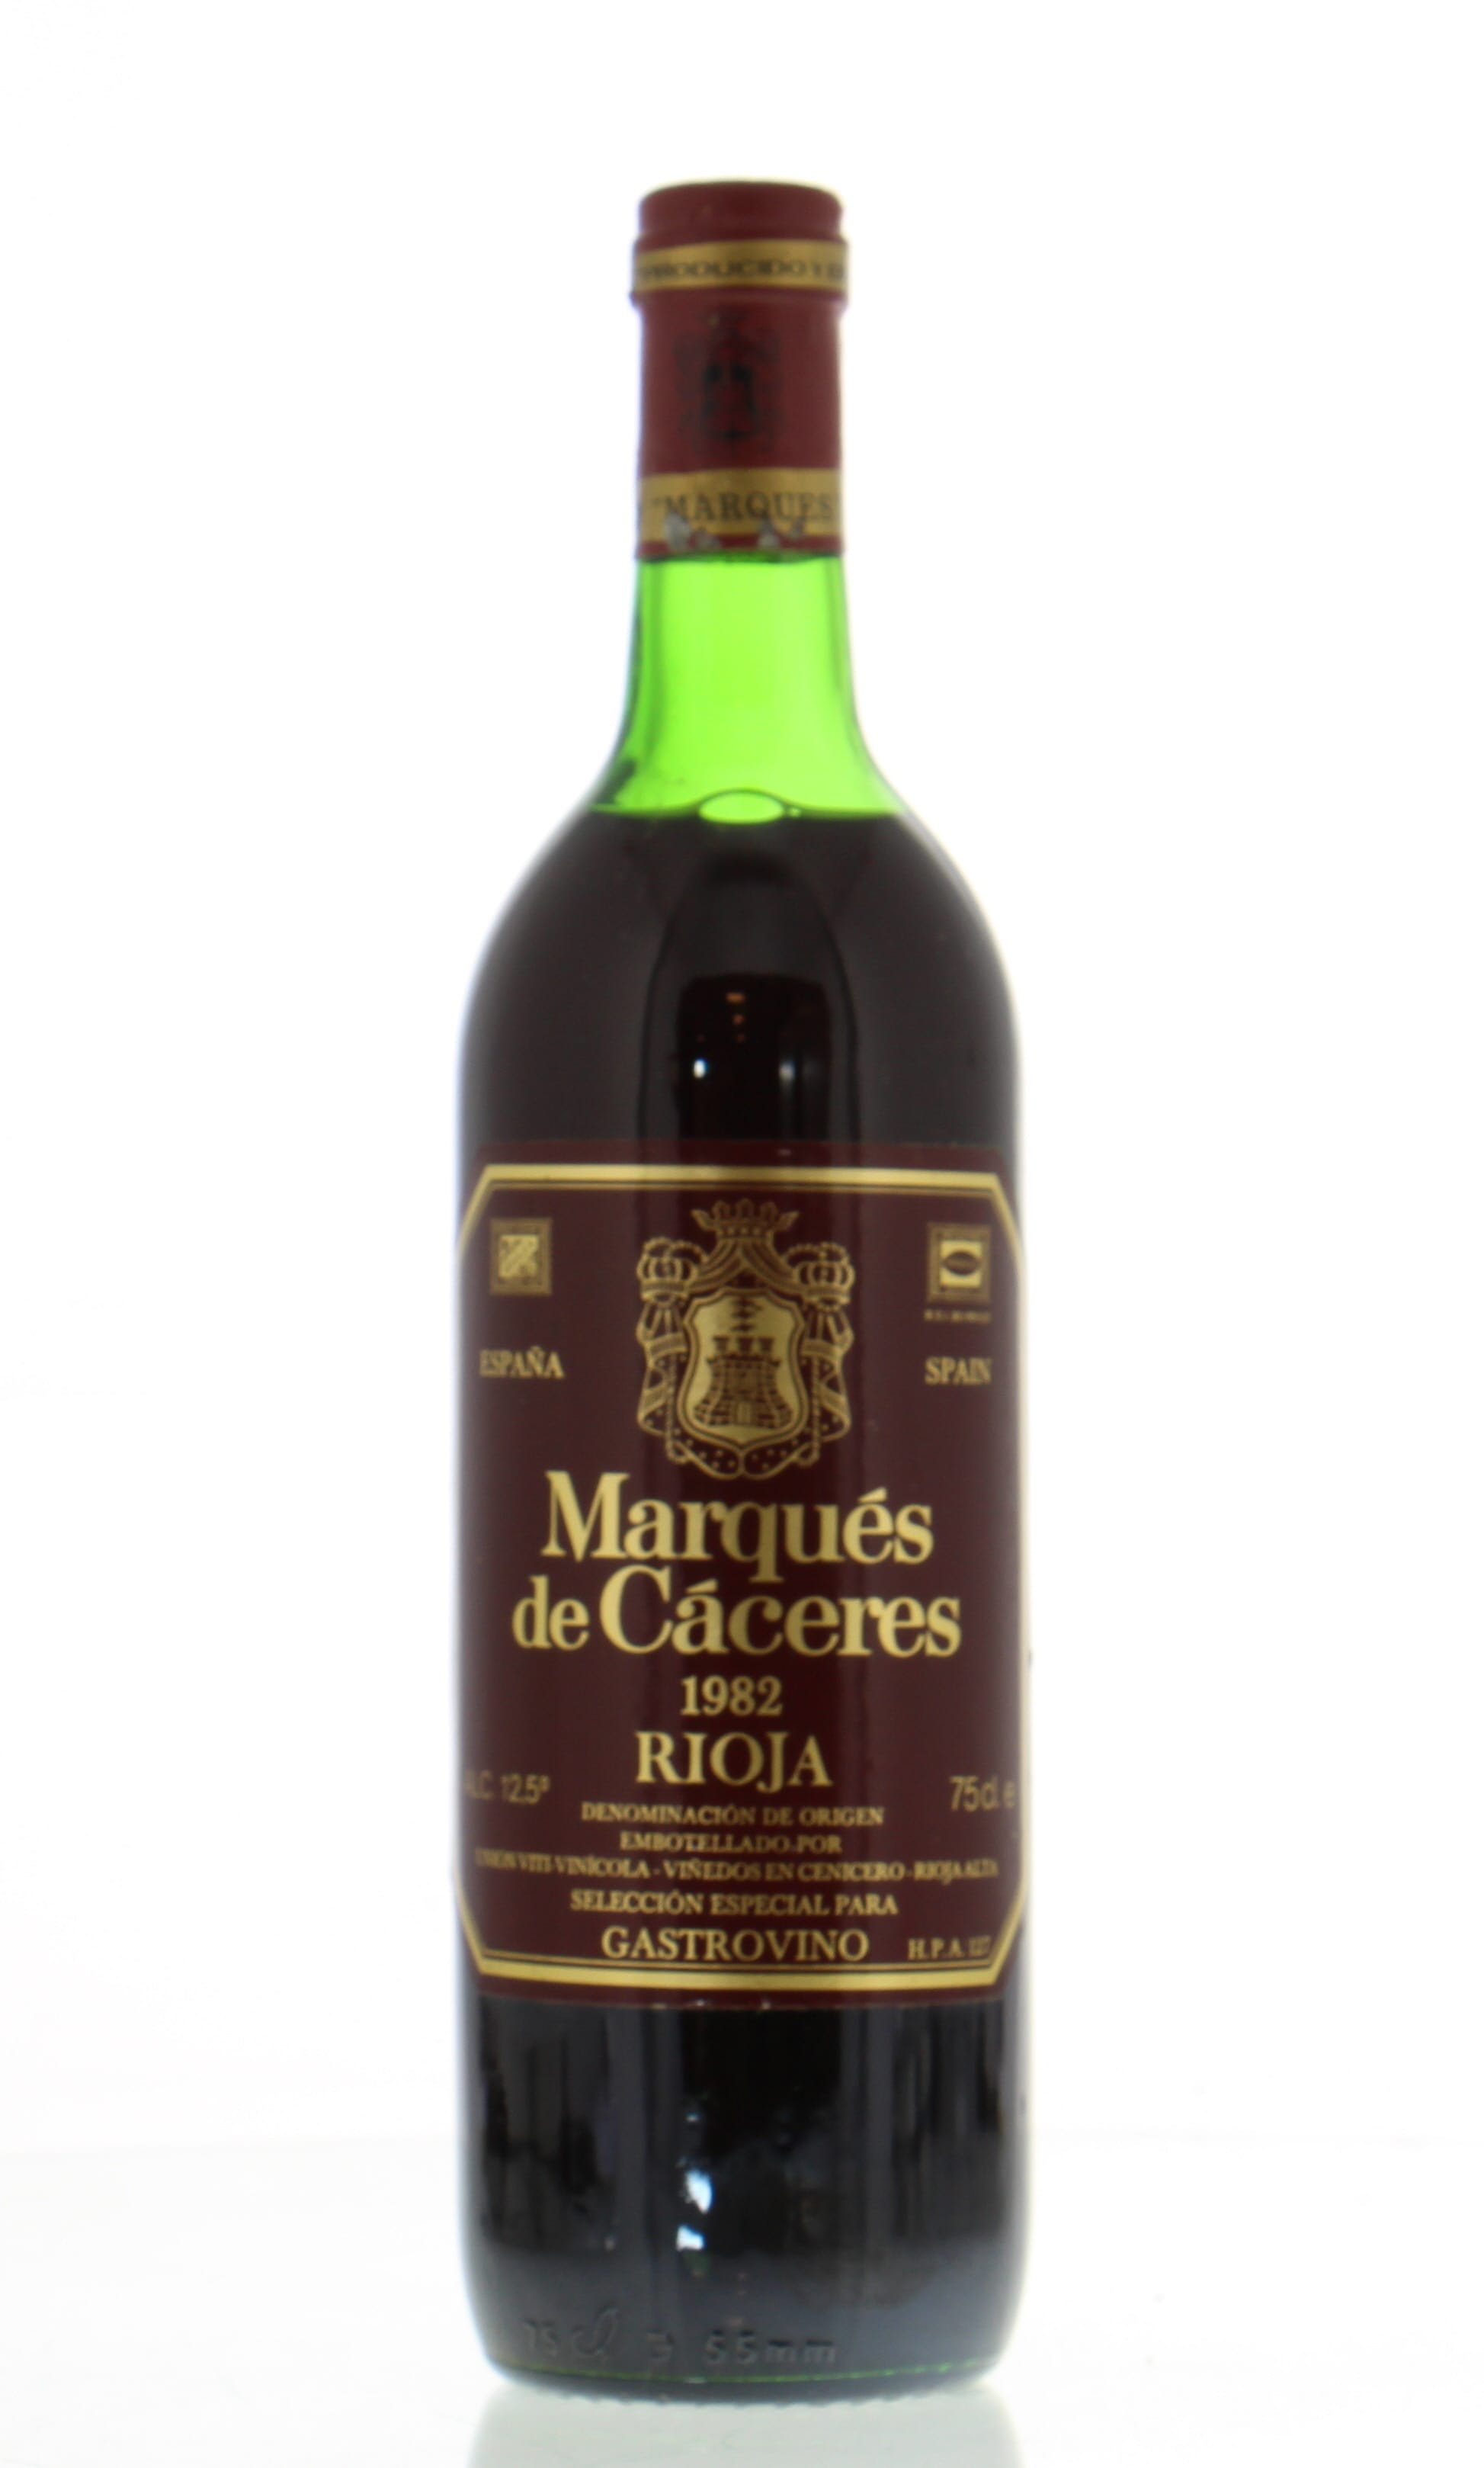 Marques de Caceres - Rioja 1982 Perfect